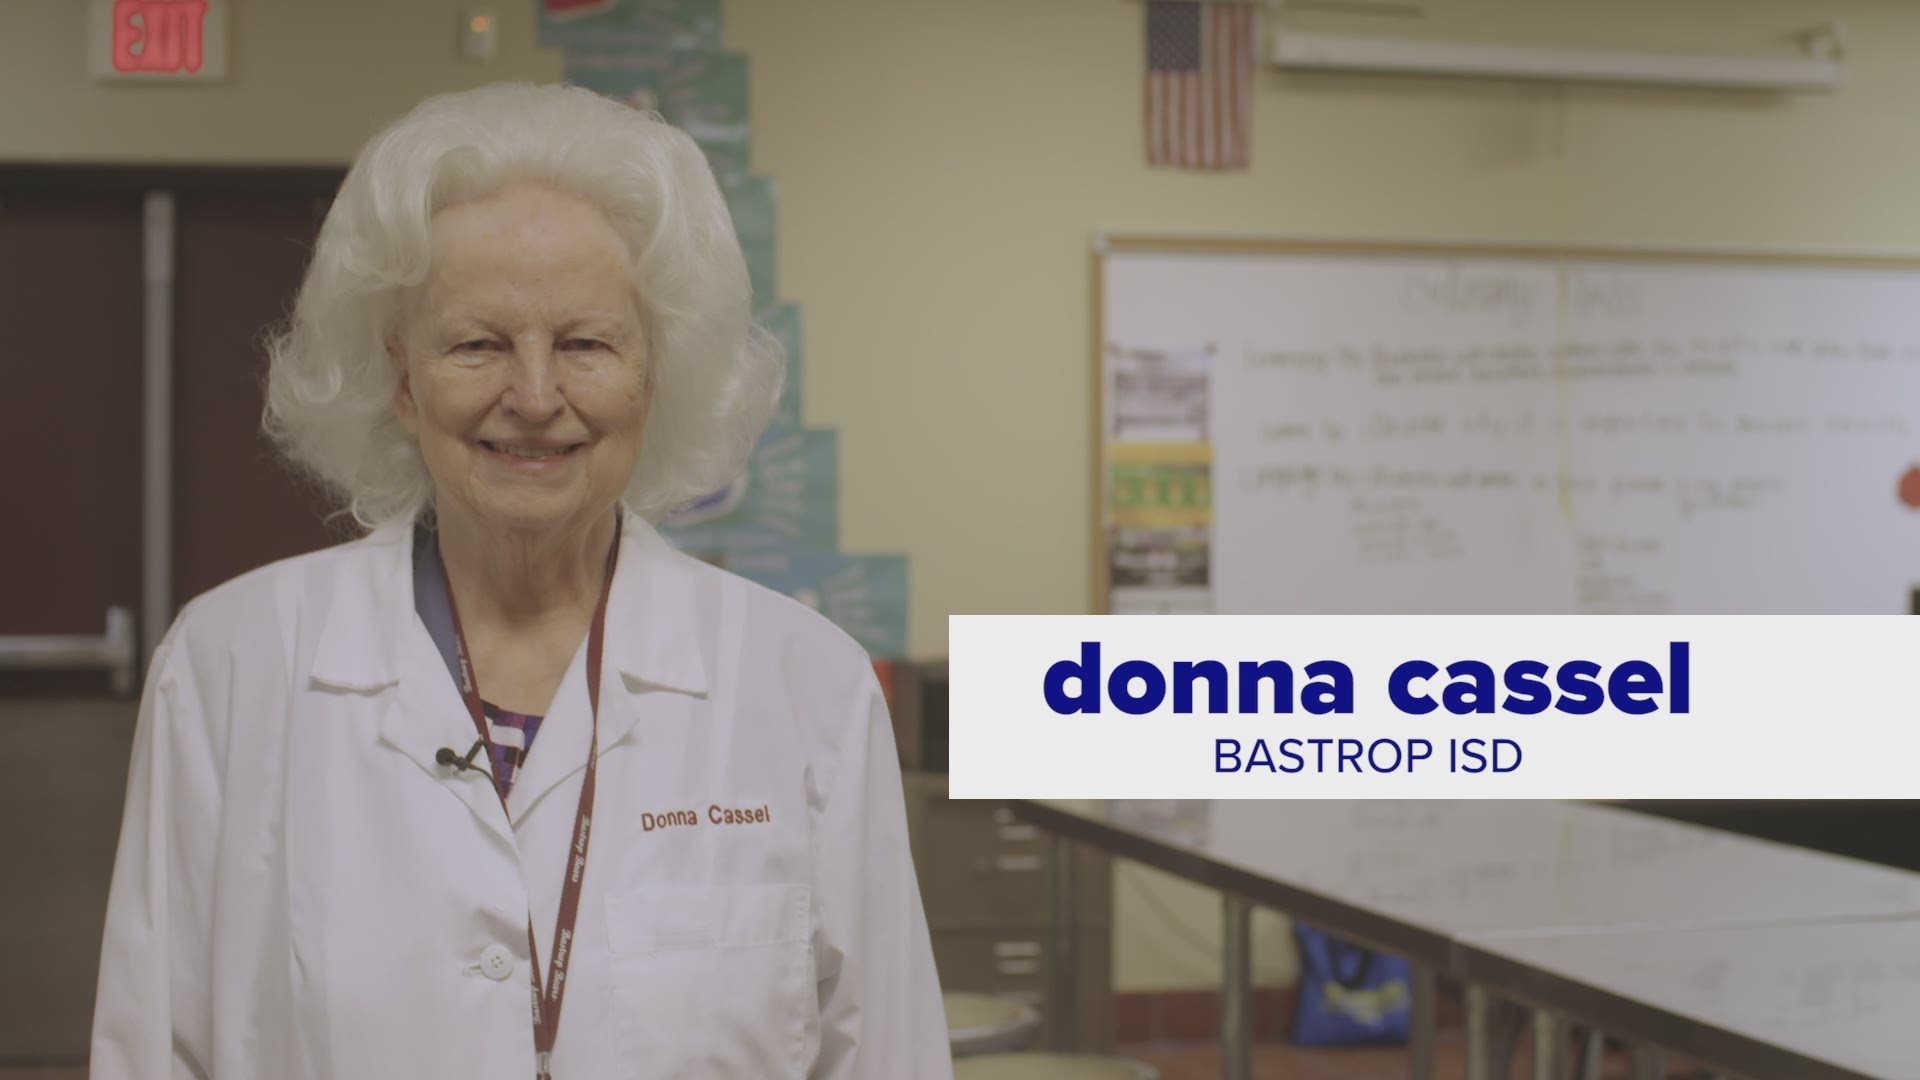 Meet Five Who Care winner Donna Cassel.